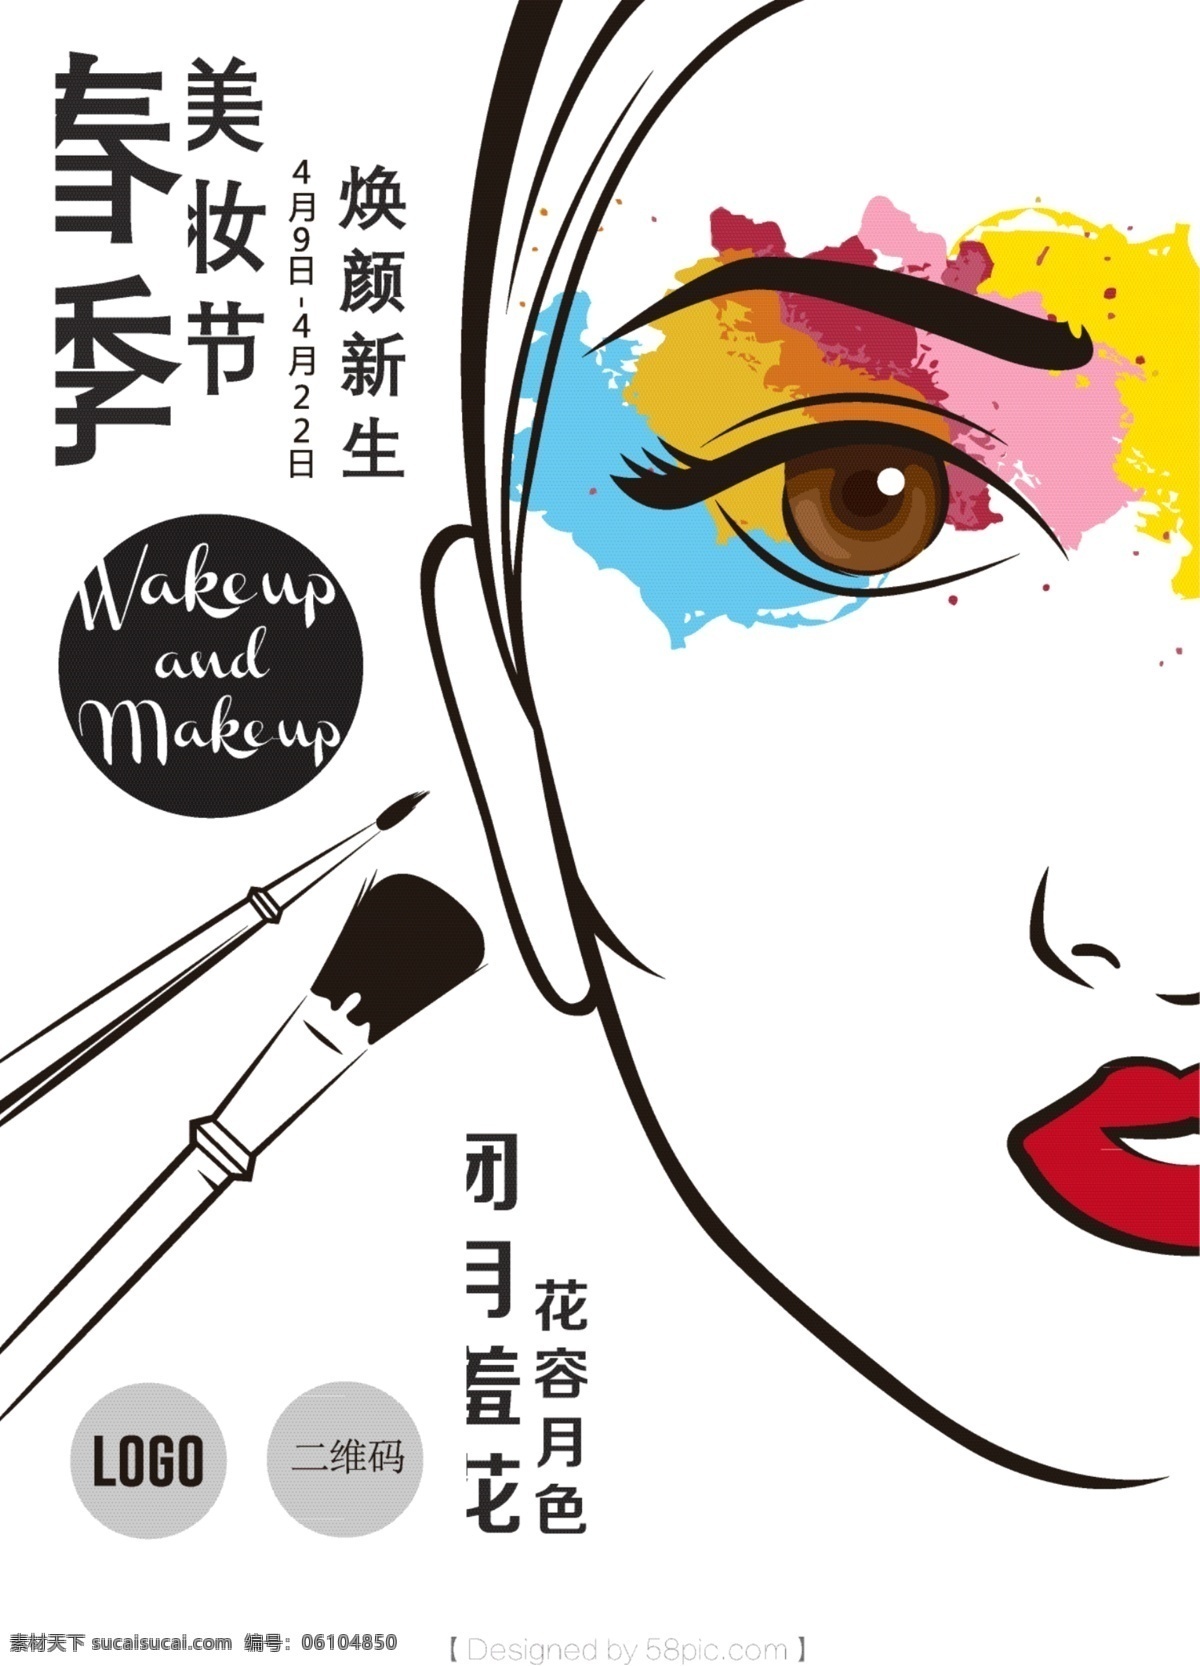 简约 创意 美 妆 节 春季 海报 矢量素材 矢量化妆品 化妆品素材 化妆品海报 美妆节 矢量人物